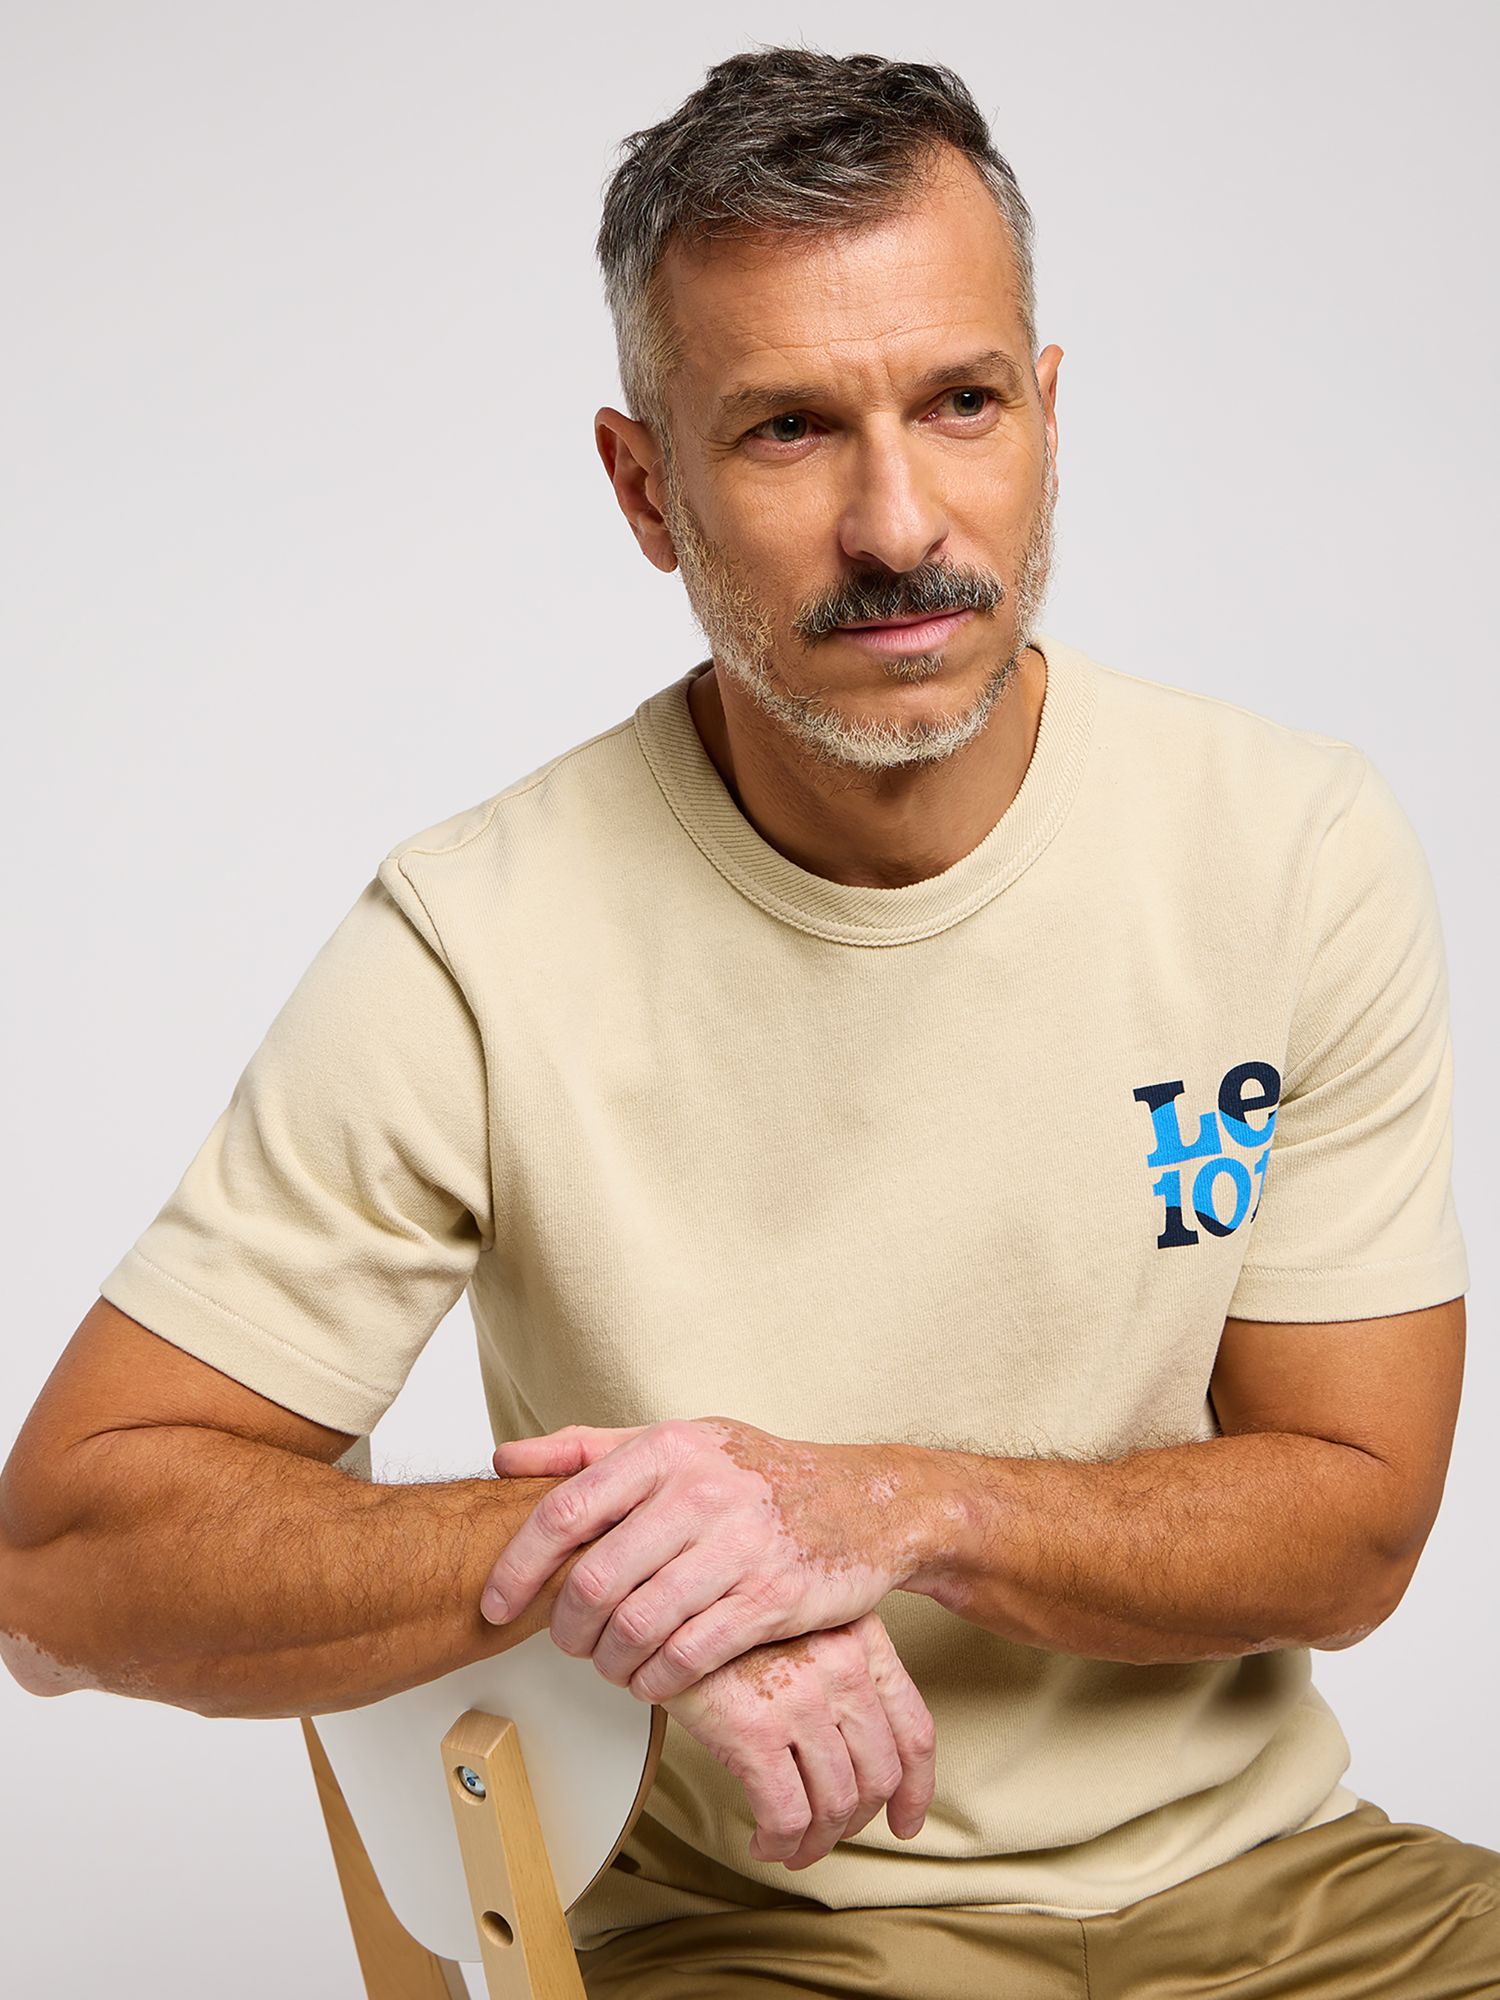 Buy Lee 101 Cotton T-Shirt, Greige Online at johnlewis.com